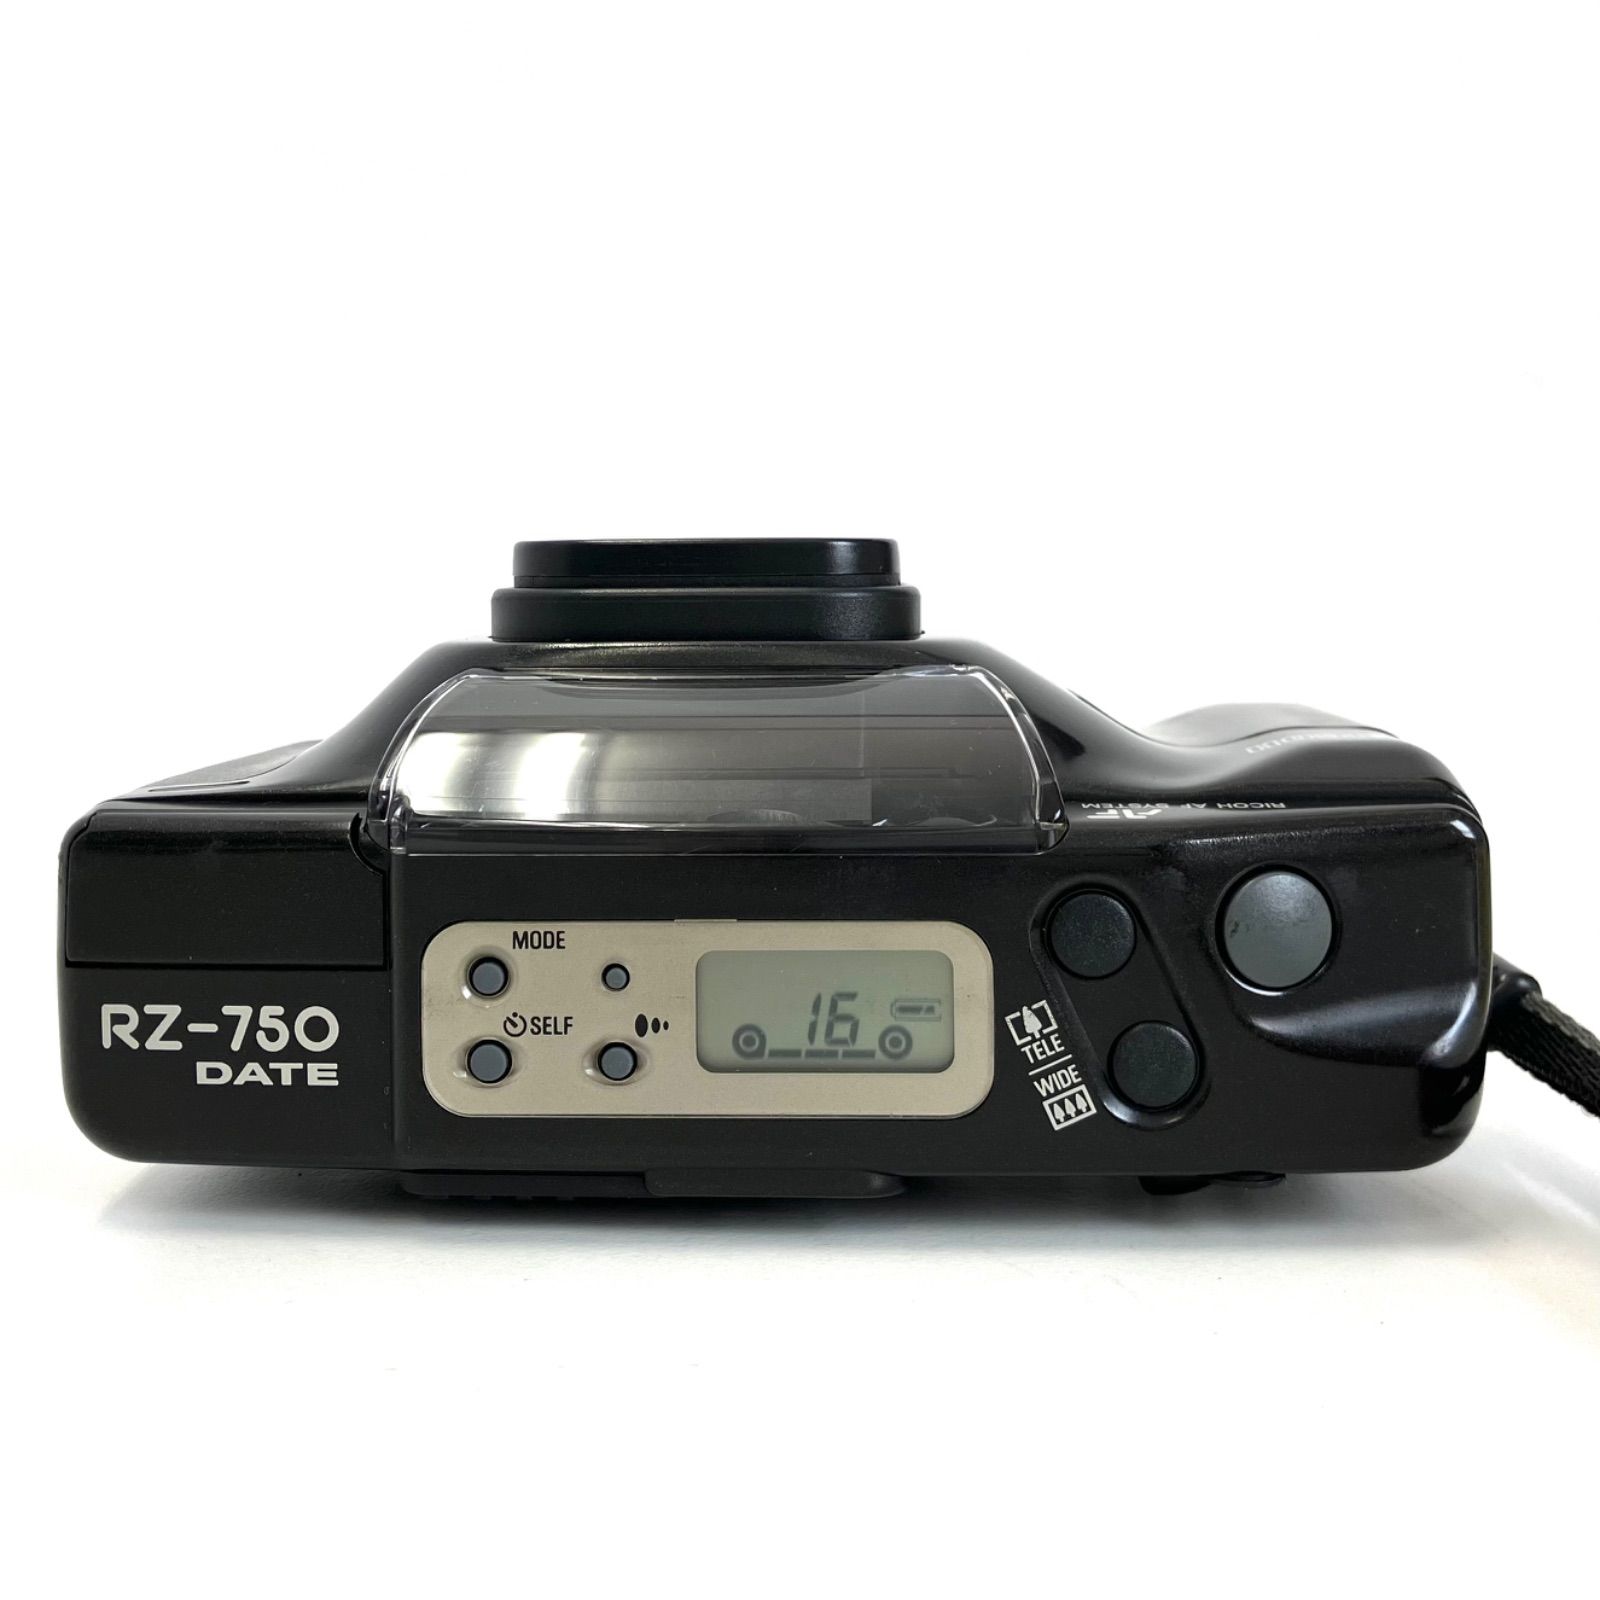 RICOH RZ-750 DATE フィルムカメラ - フィルムカメラ